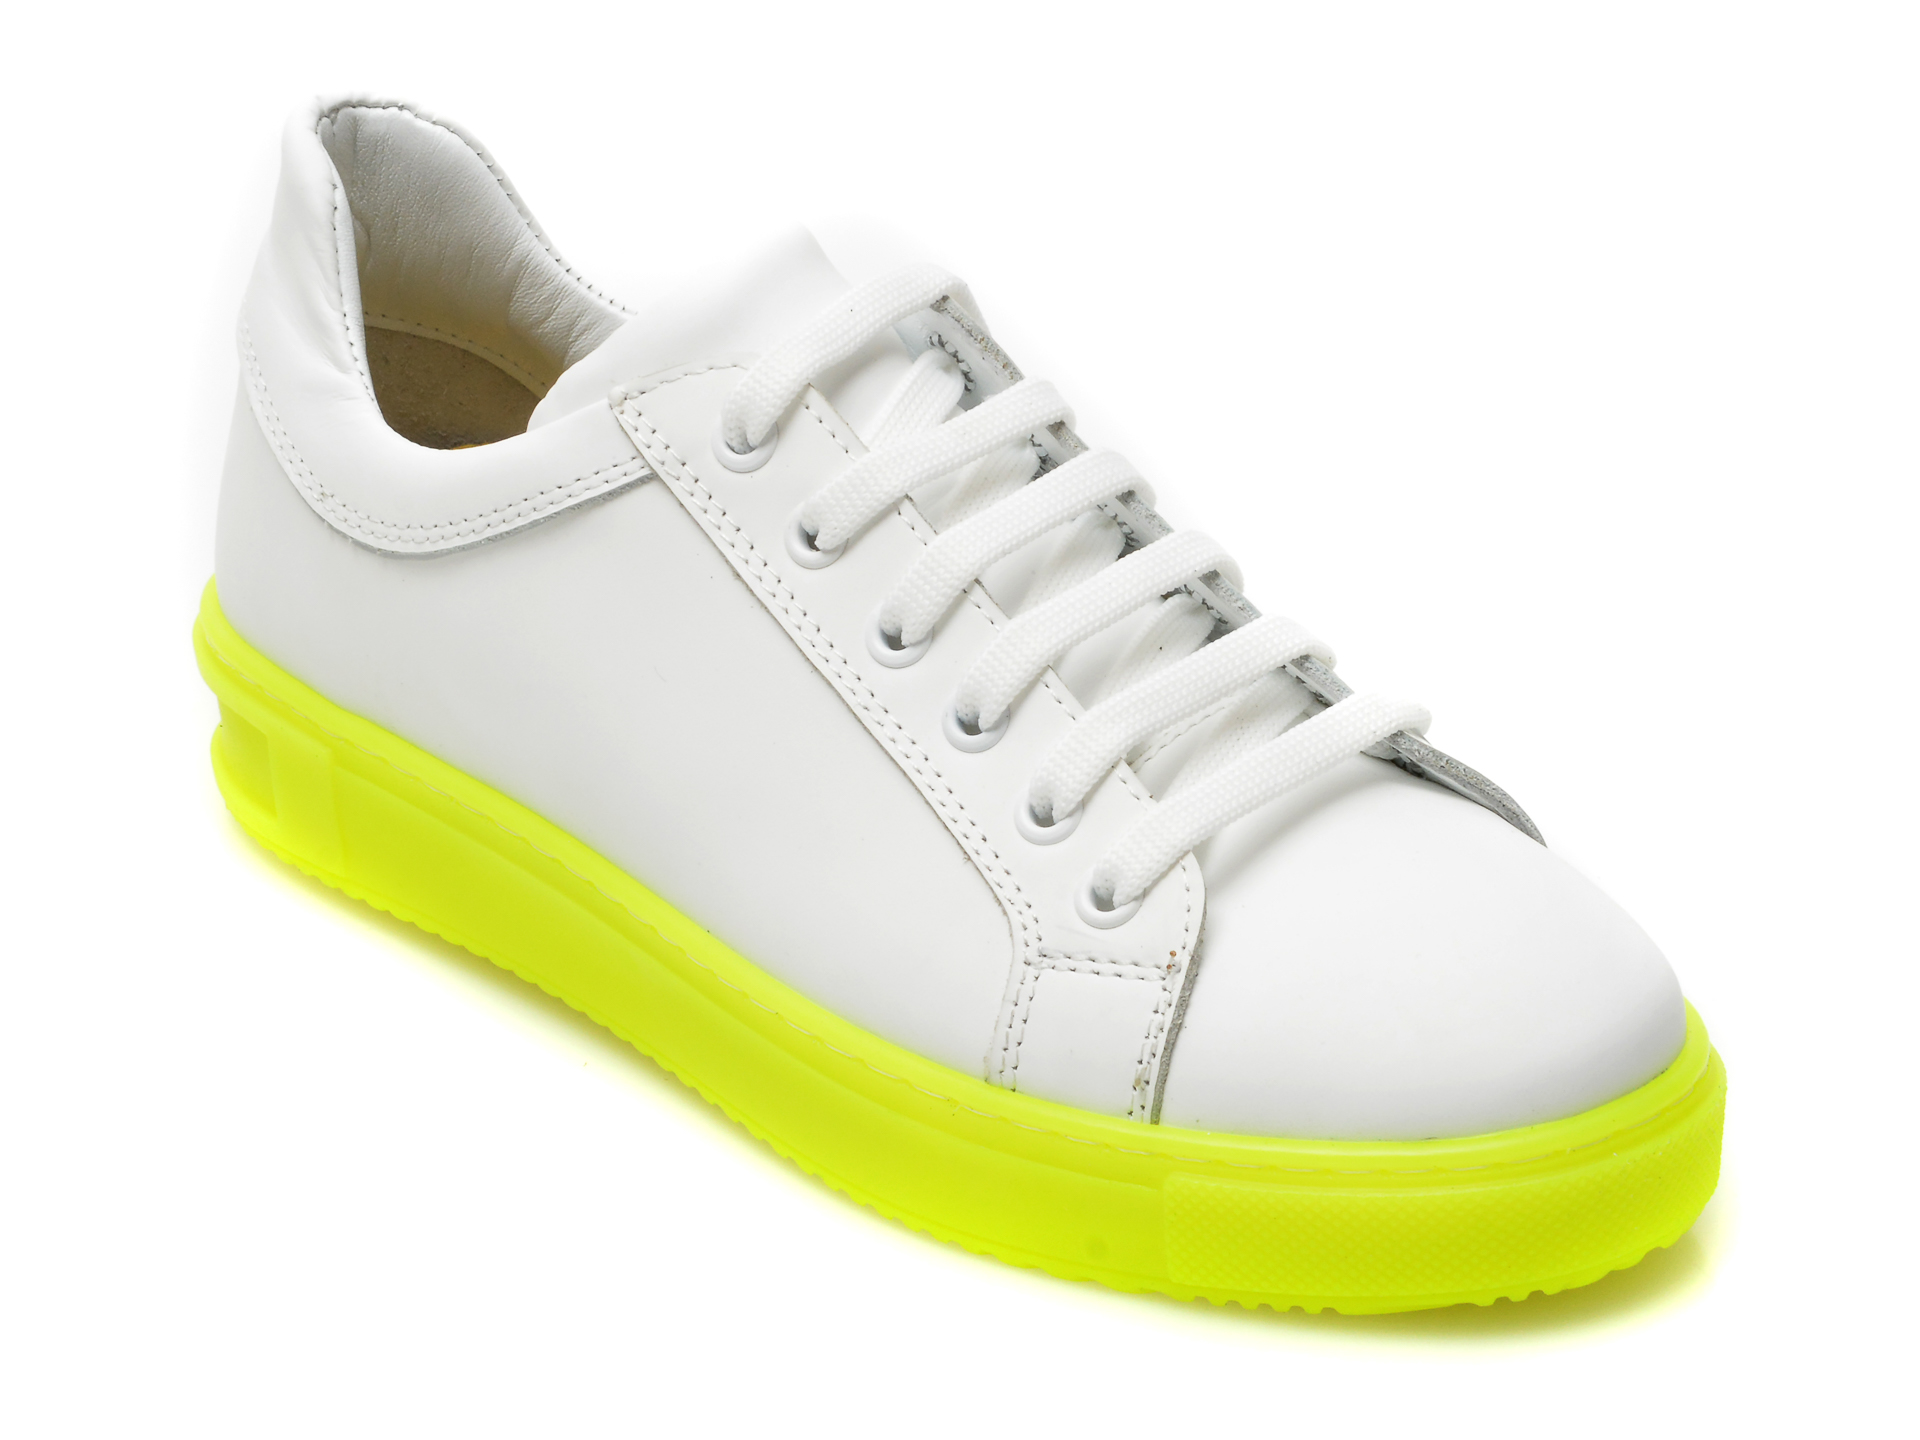 Pantofi sport BESTELLO albi, 1011, din piele naturala BESTELLO